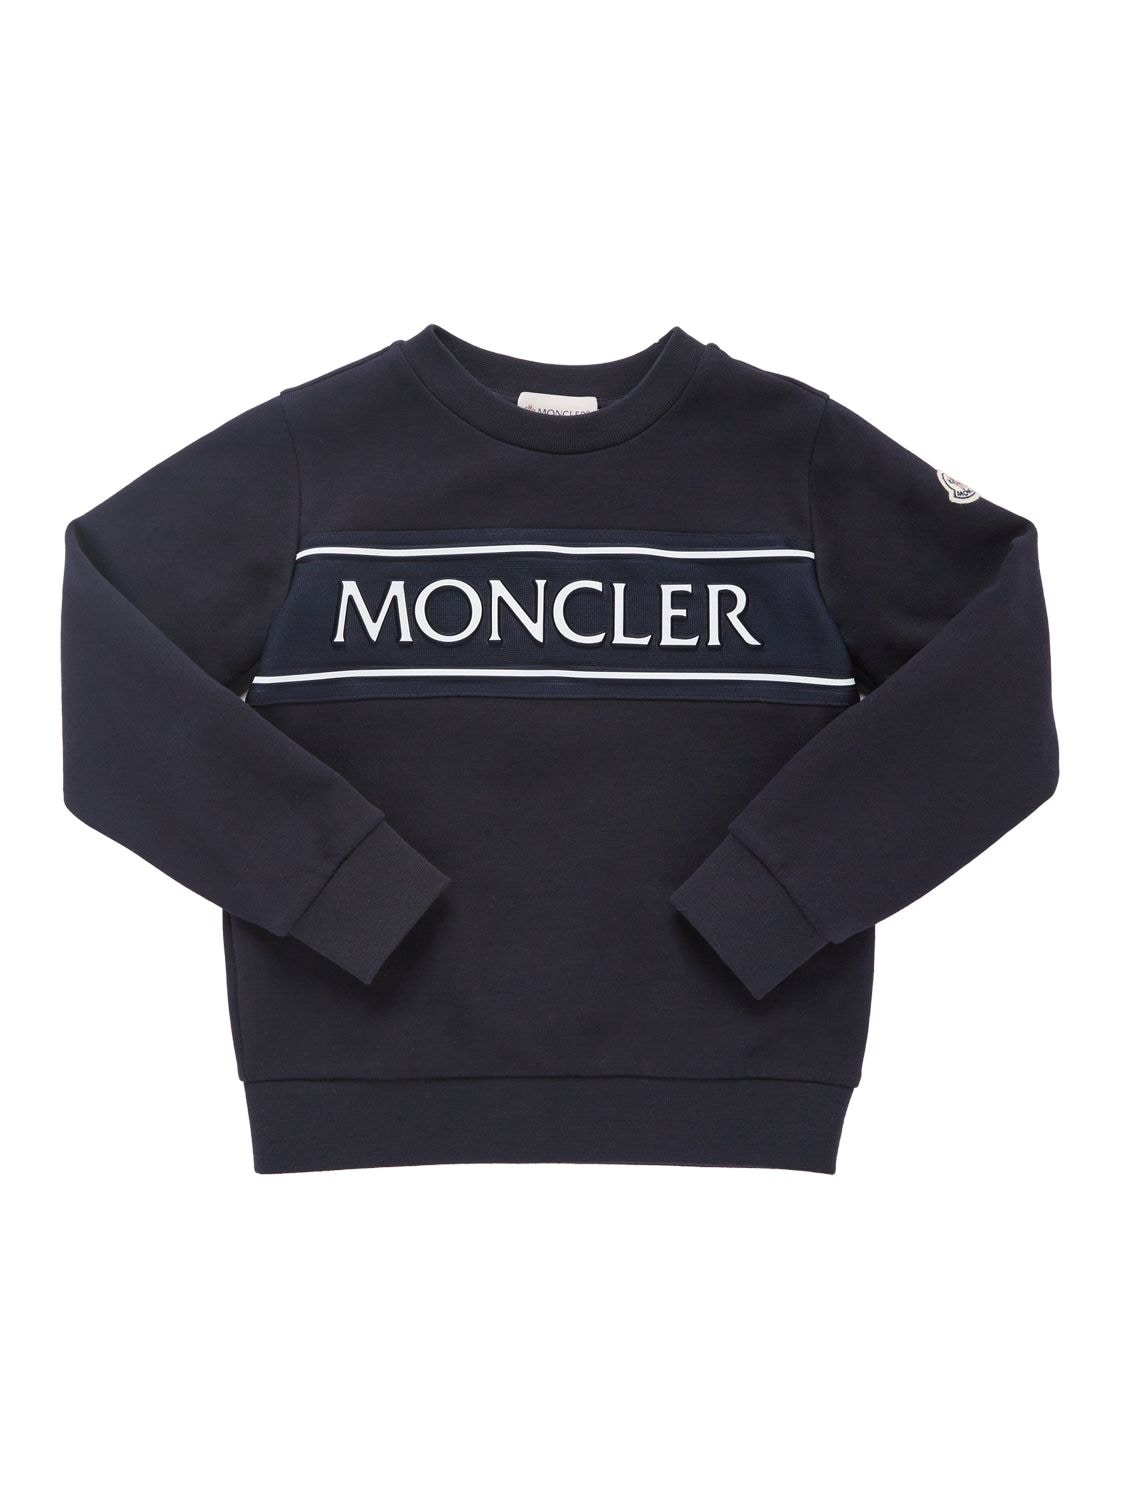 Moncler Kids' Brushed Cotton Sweatshirt In Navy